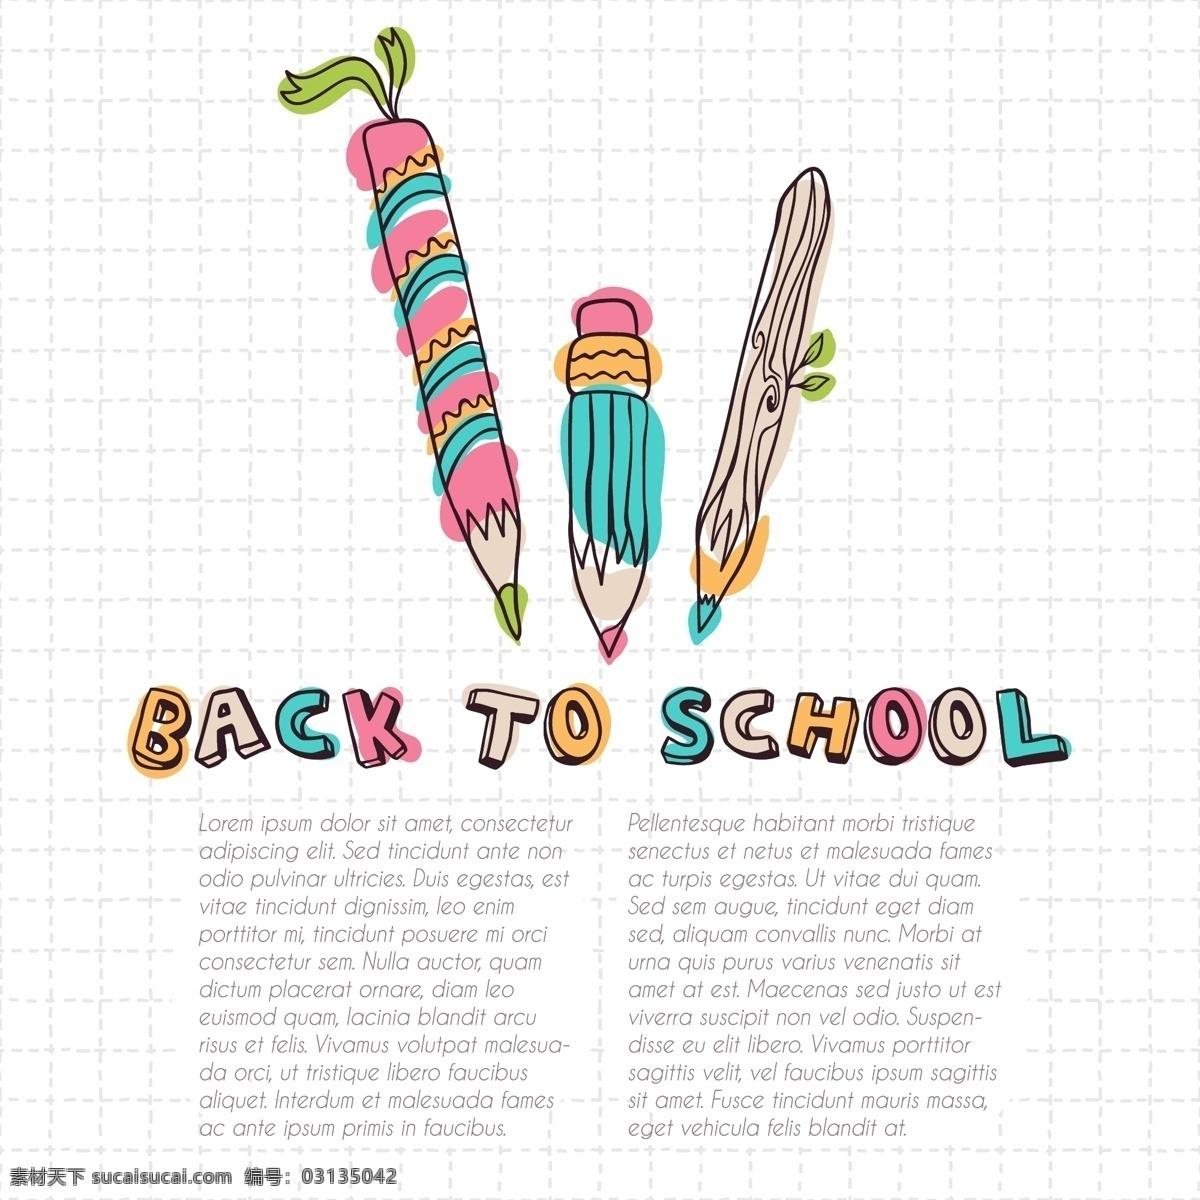 学习用品 回到学校 学习 读书 手绘 彩色铅笔 字母设计 矢量素材 生活百科 矢量